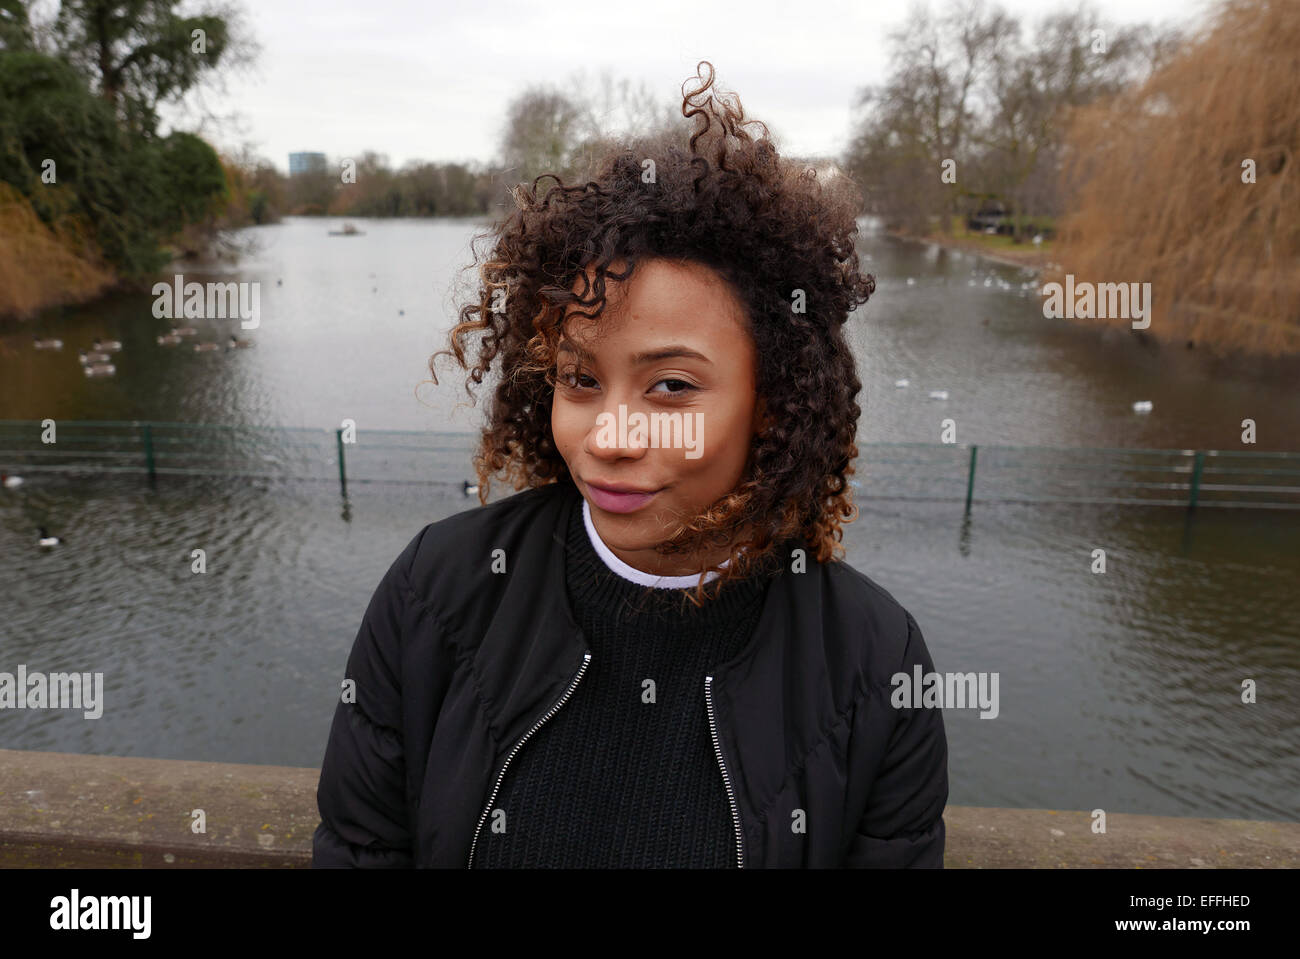 Regno Unito London Regents Park ritratto di una giovane e alla moda di razza mista ragazza Foto Stock